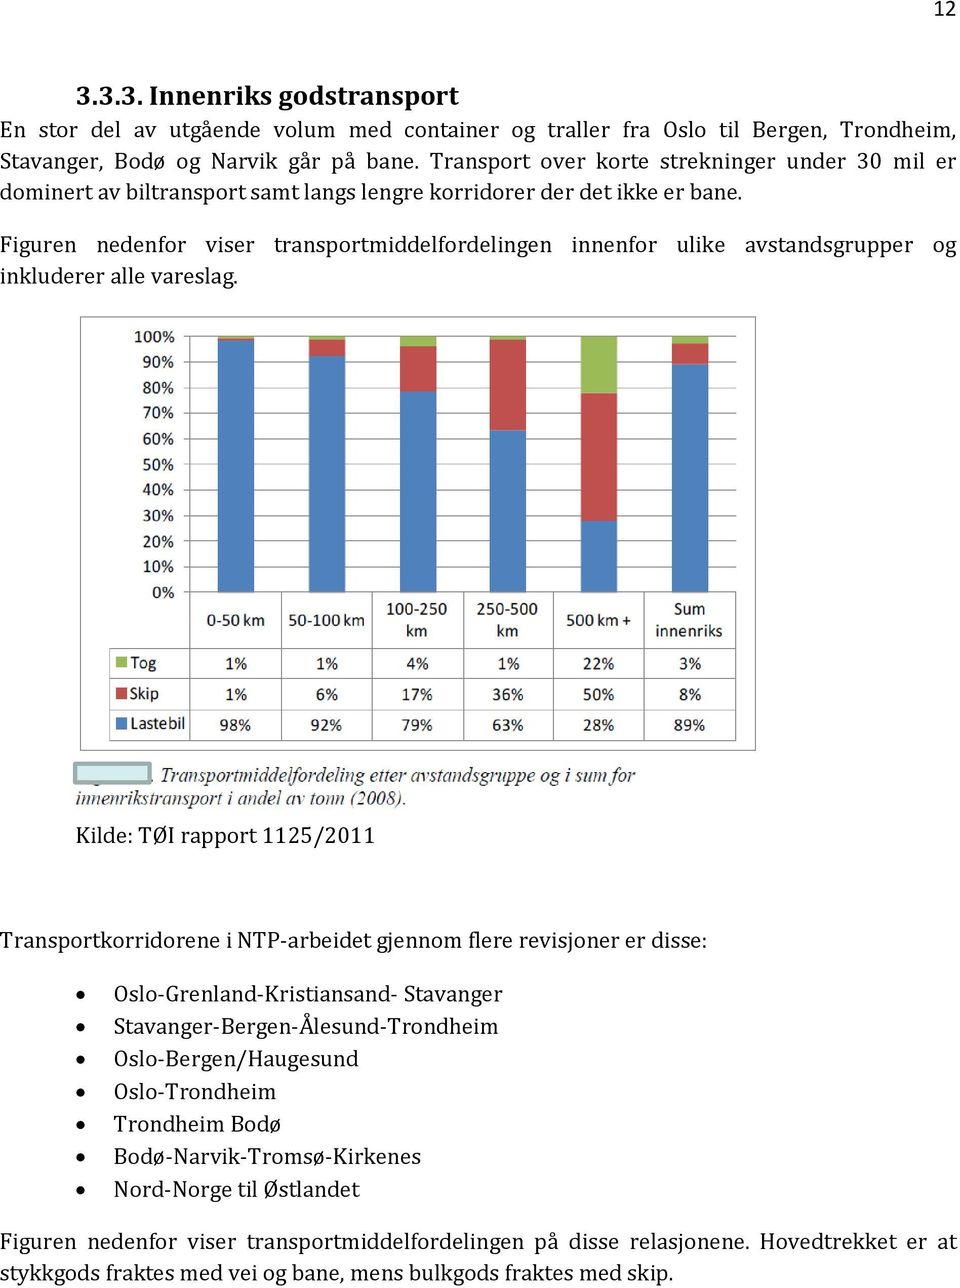 Figuren nedenfor viser transportmiddelfordelingen innenfor ulike avstandsgrupper og inkluderer alle vareslag.